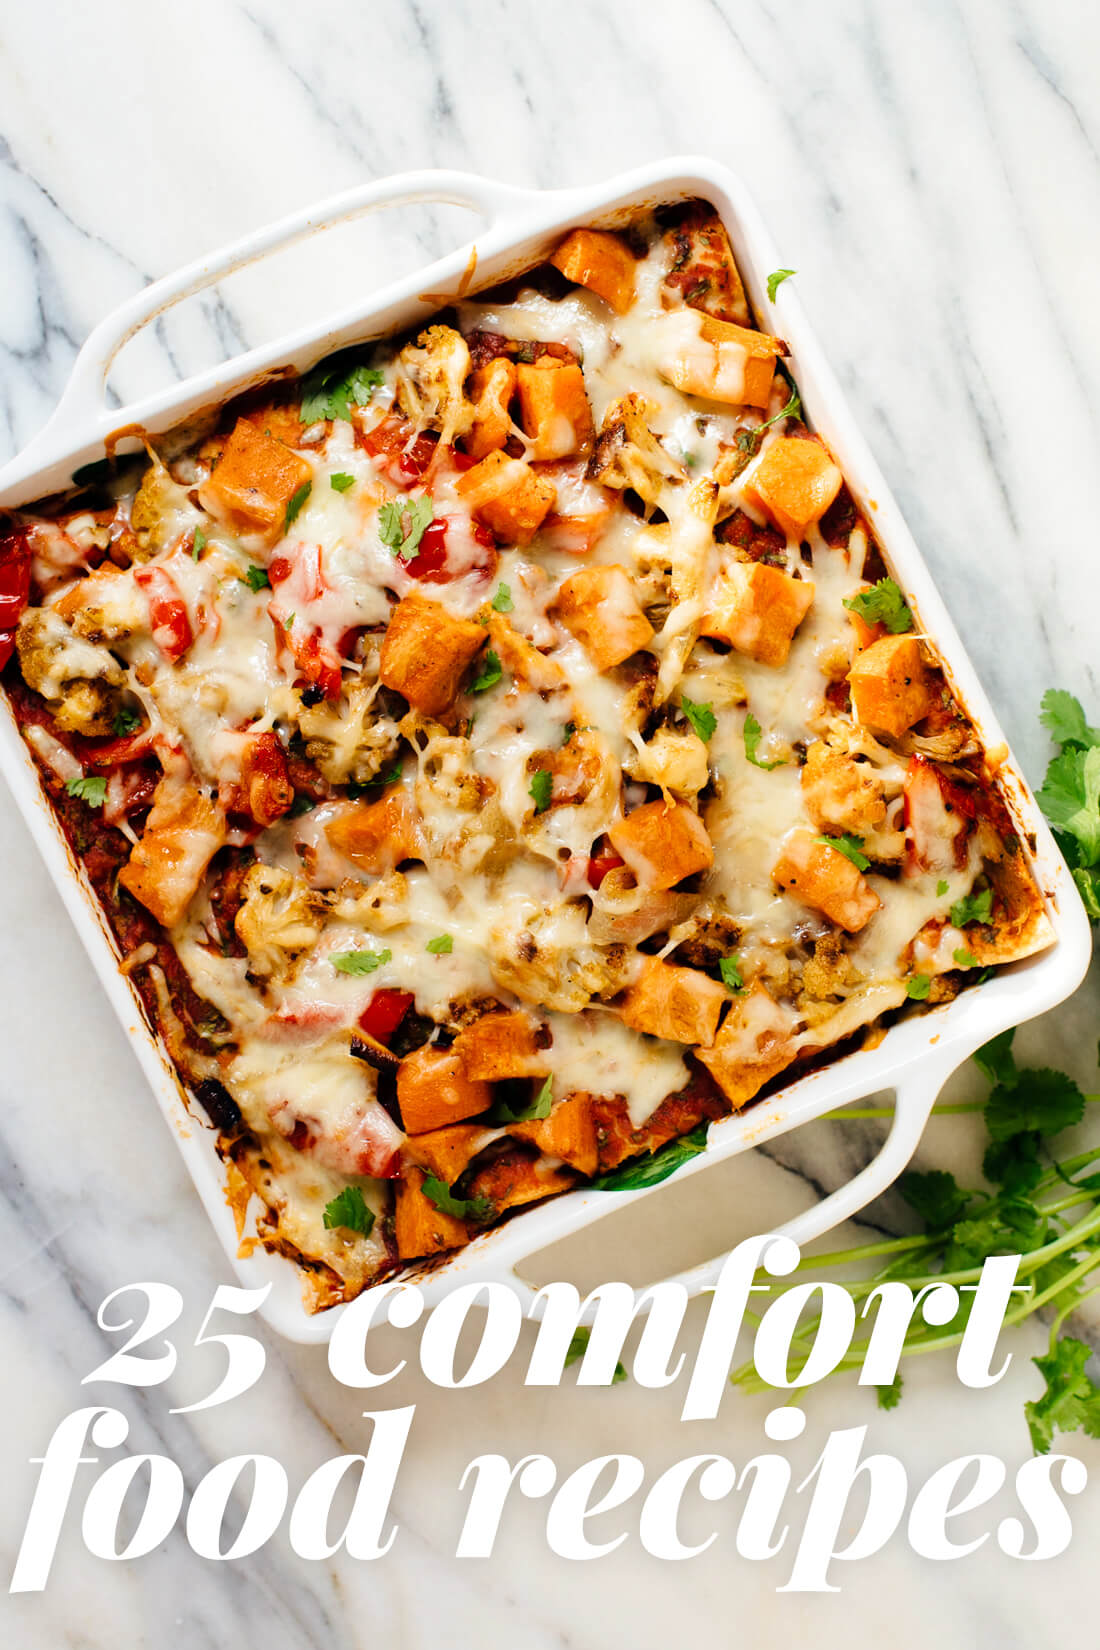 25 Healthy Comfort Food Recipes